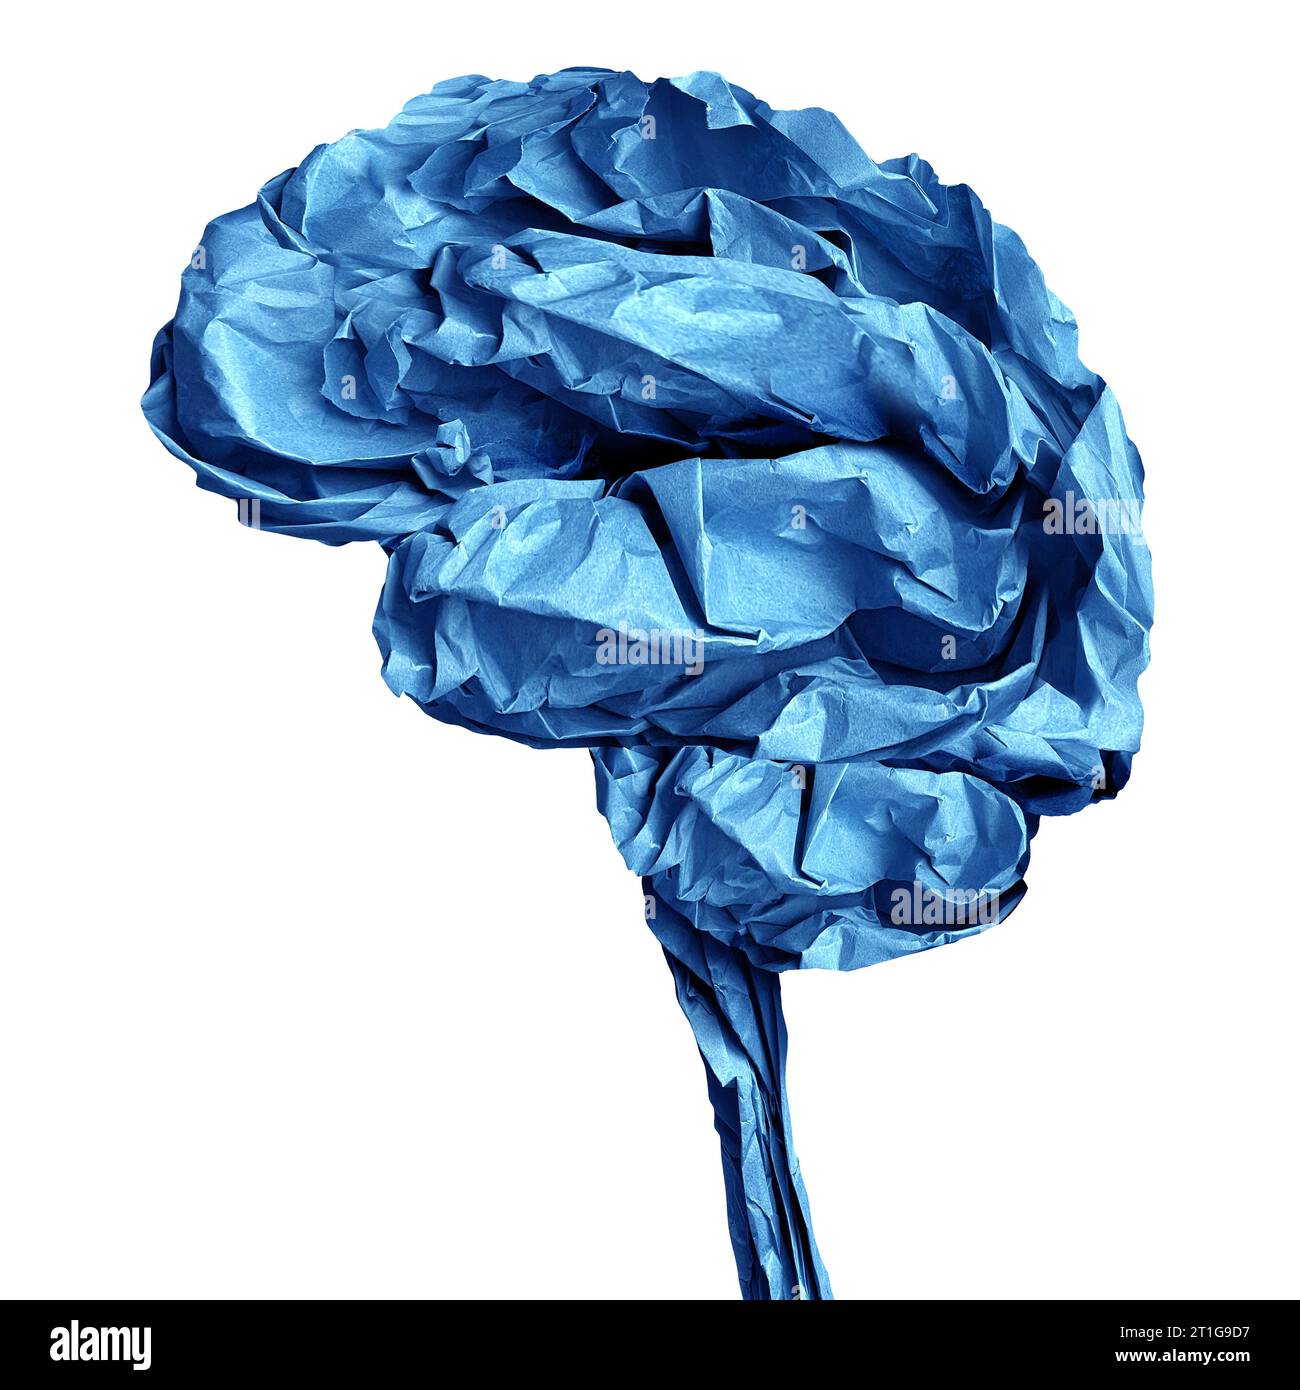 Cervello umano oggetto di carta schiacciato come neurologia e simbolo medico anatomico cognitivo di una mente e funzione neurologica o ictus correlati Foto Stock